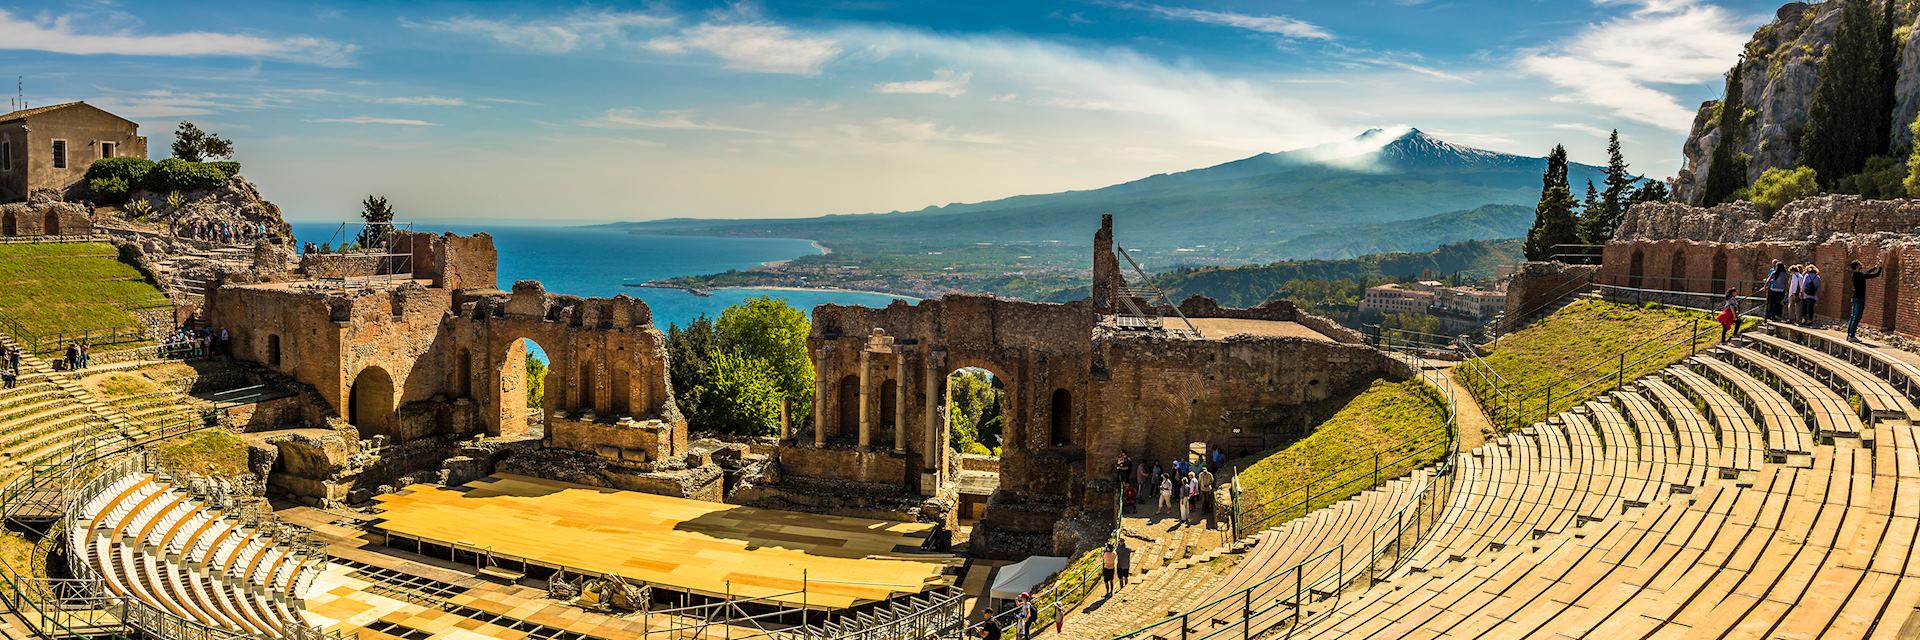 Ancient Theatre in Taormina, Sicily